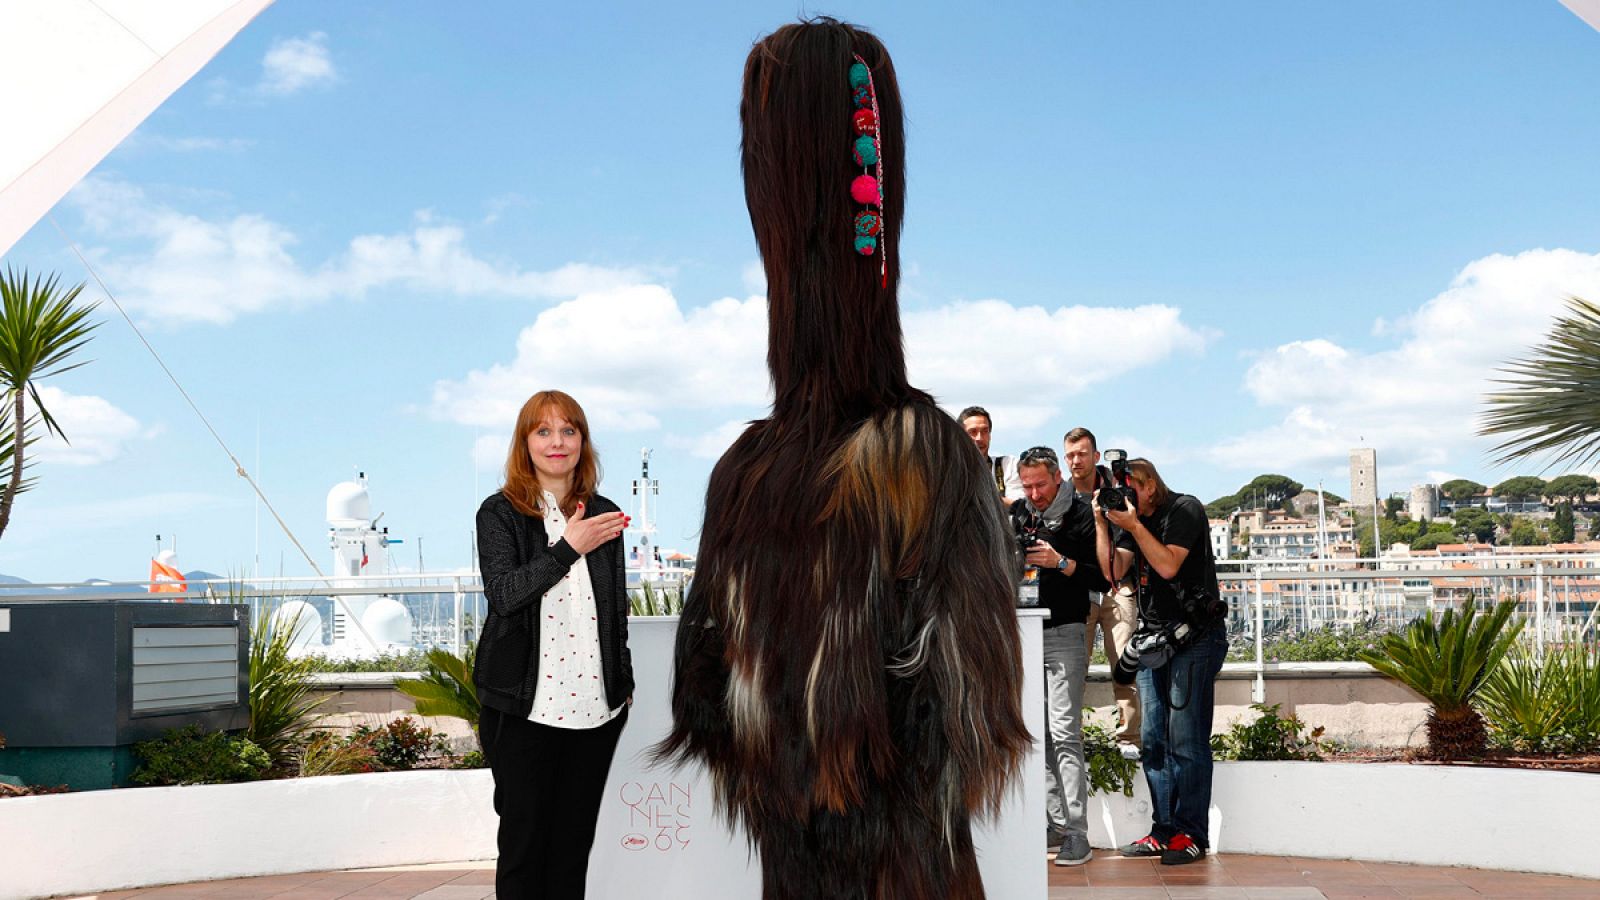 La directora alemana Maren Ade presenta 'Toni Erdmann' en la 69 edición del Festival de Cannes